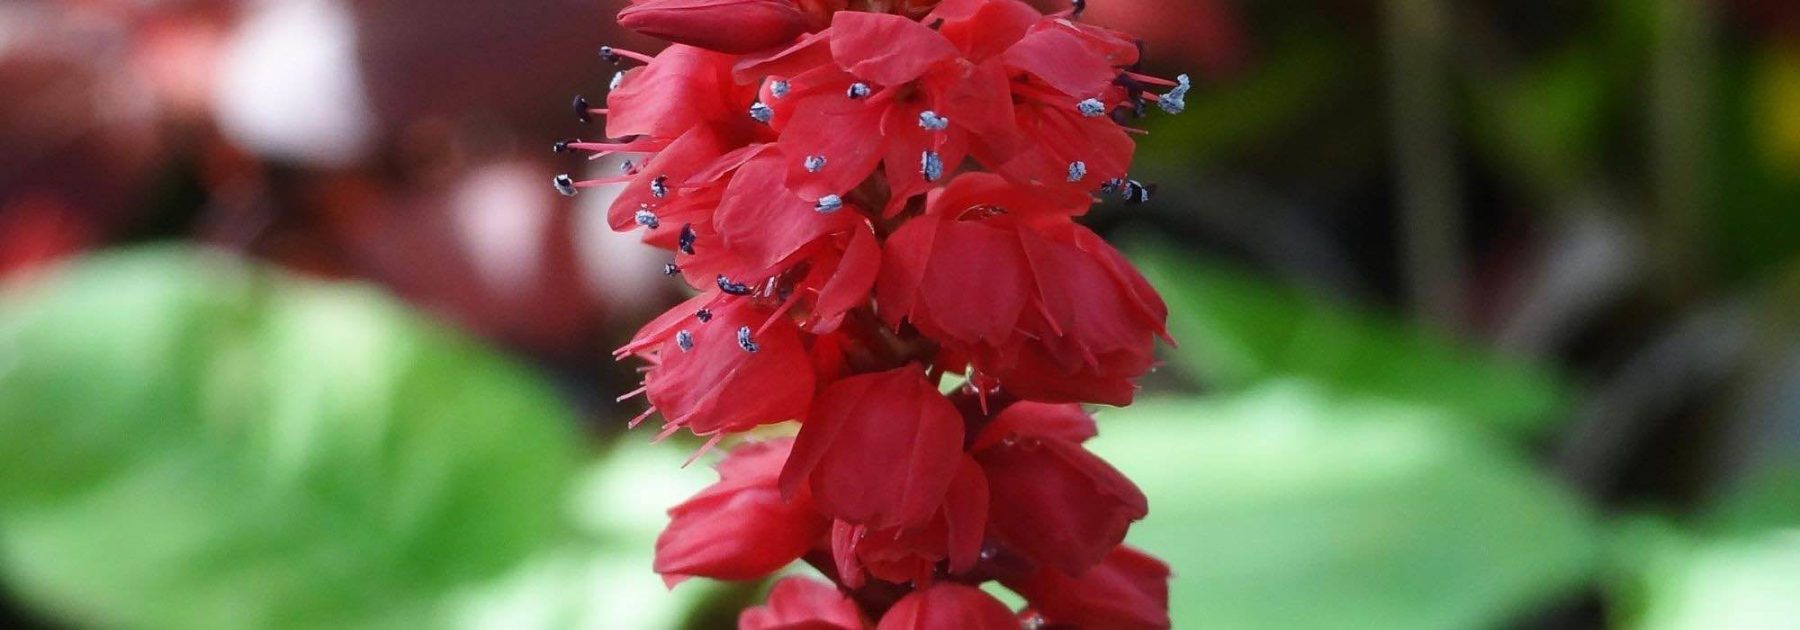 7 Persicaires à fleurs rouges